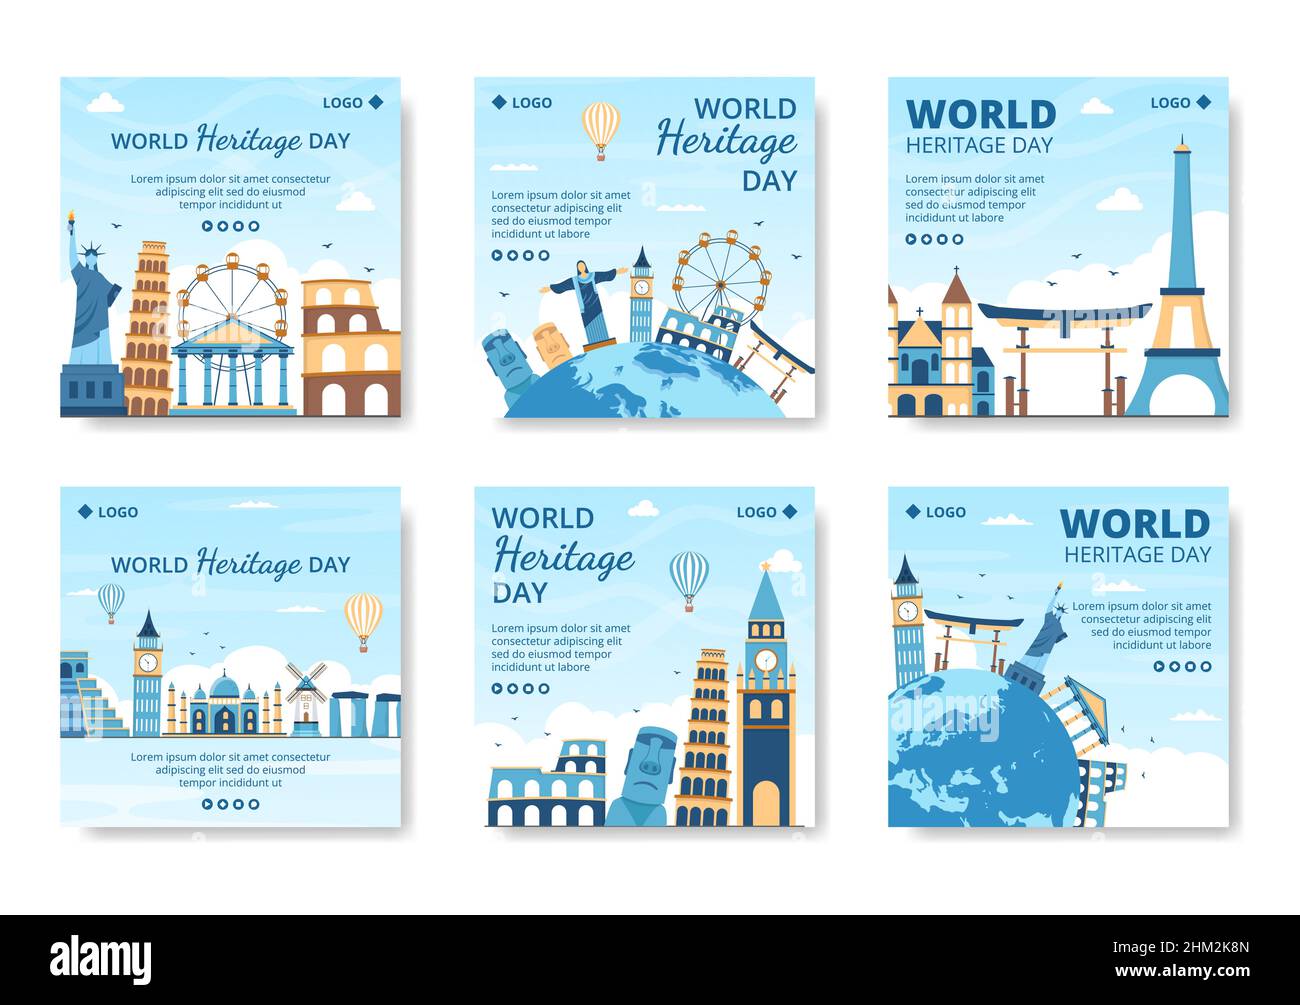 World Heritage Day Post Template Flat Design Illustrazione Editabile di sfondo quadrato adatto per i social media, biglietti d'auguri e annunci web Illustrazione Vettoriale